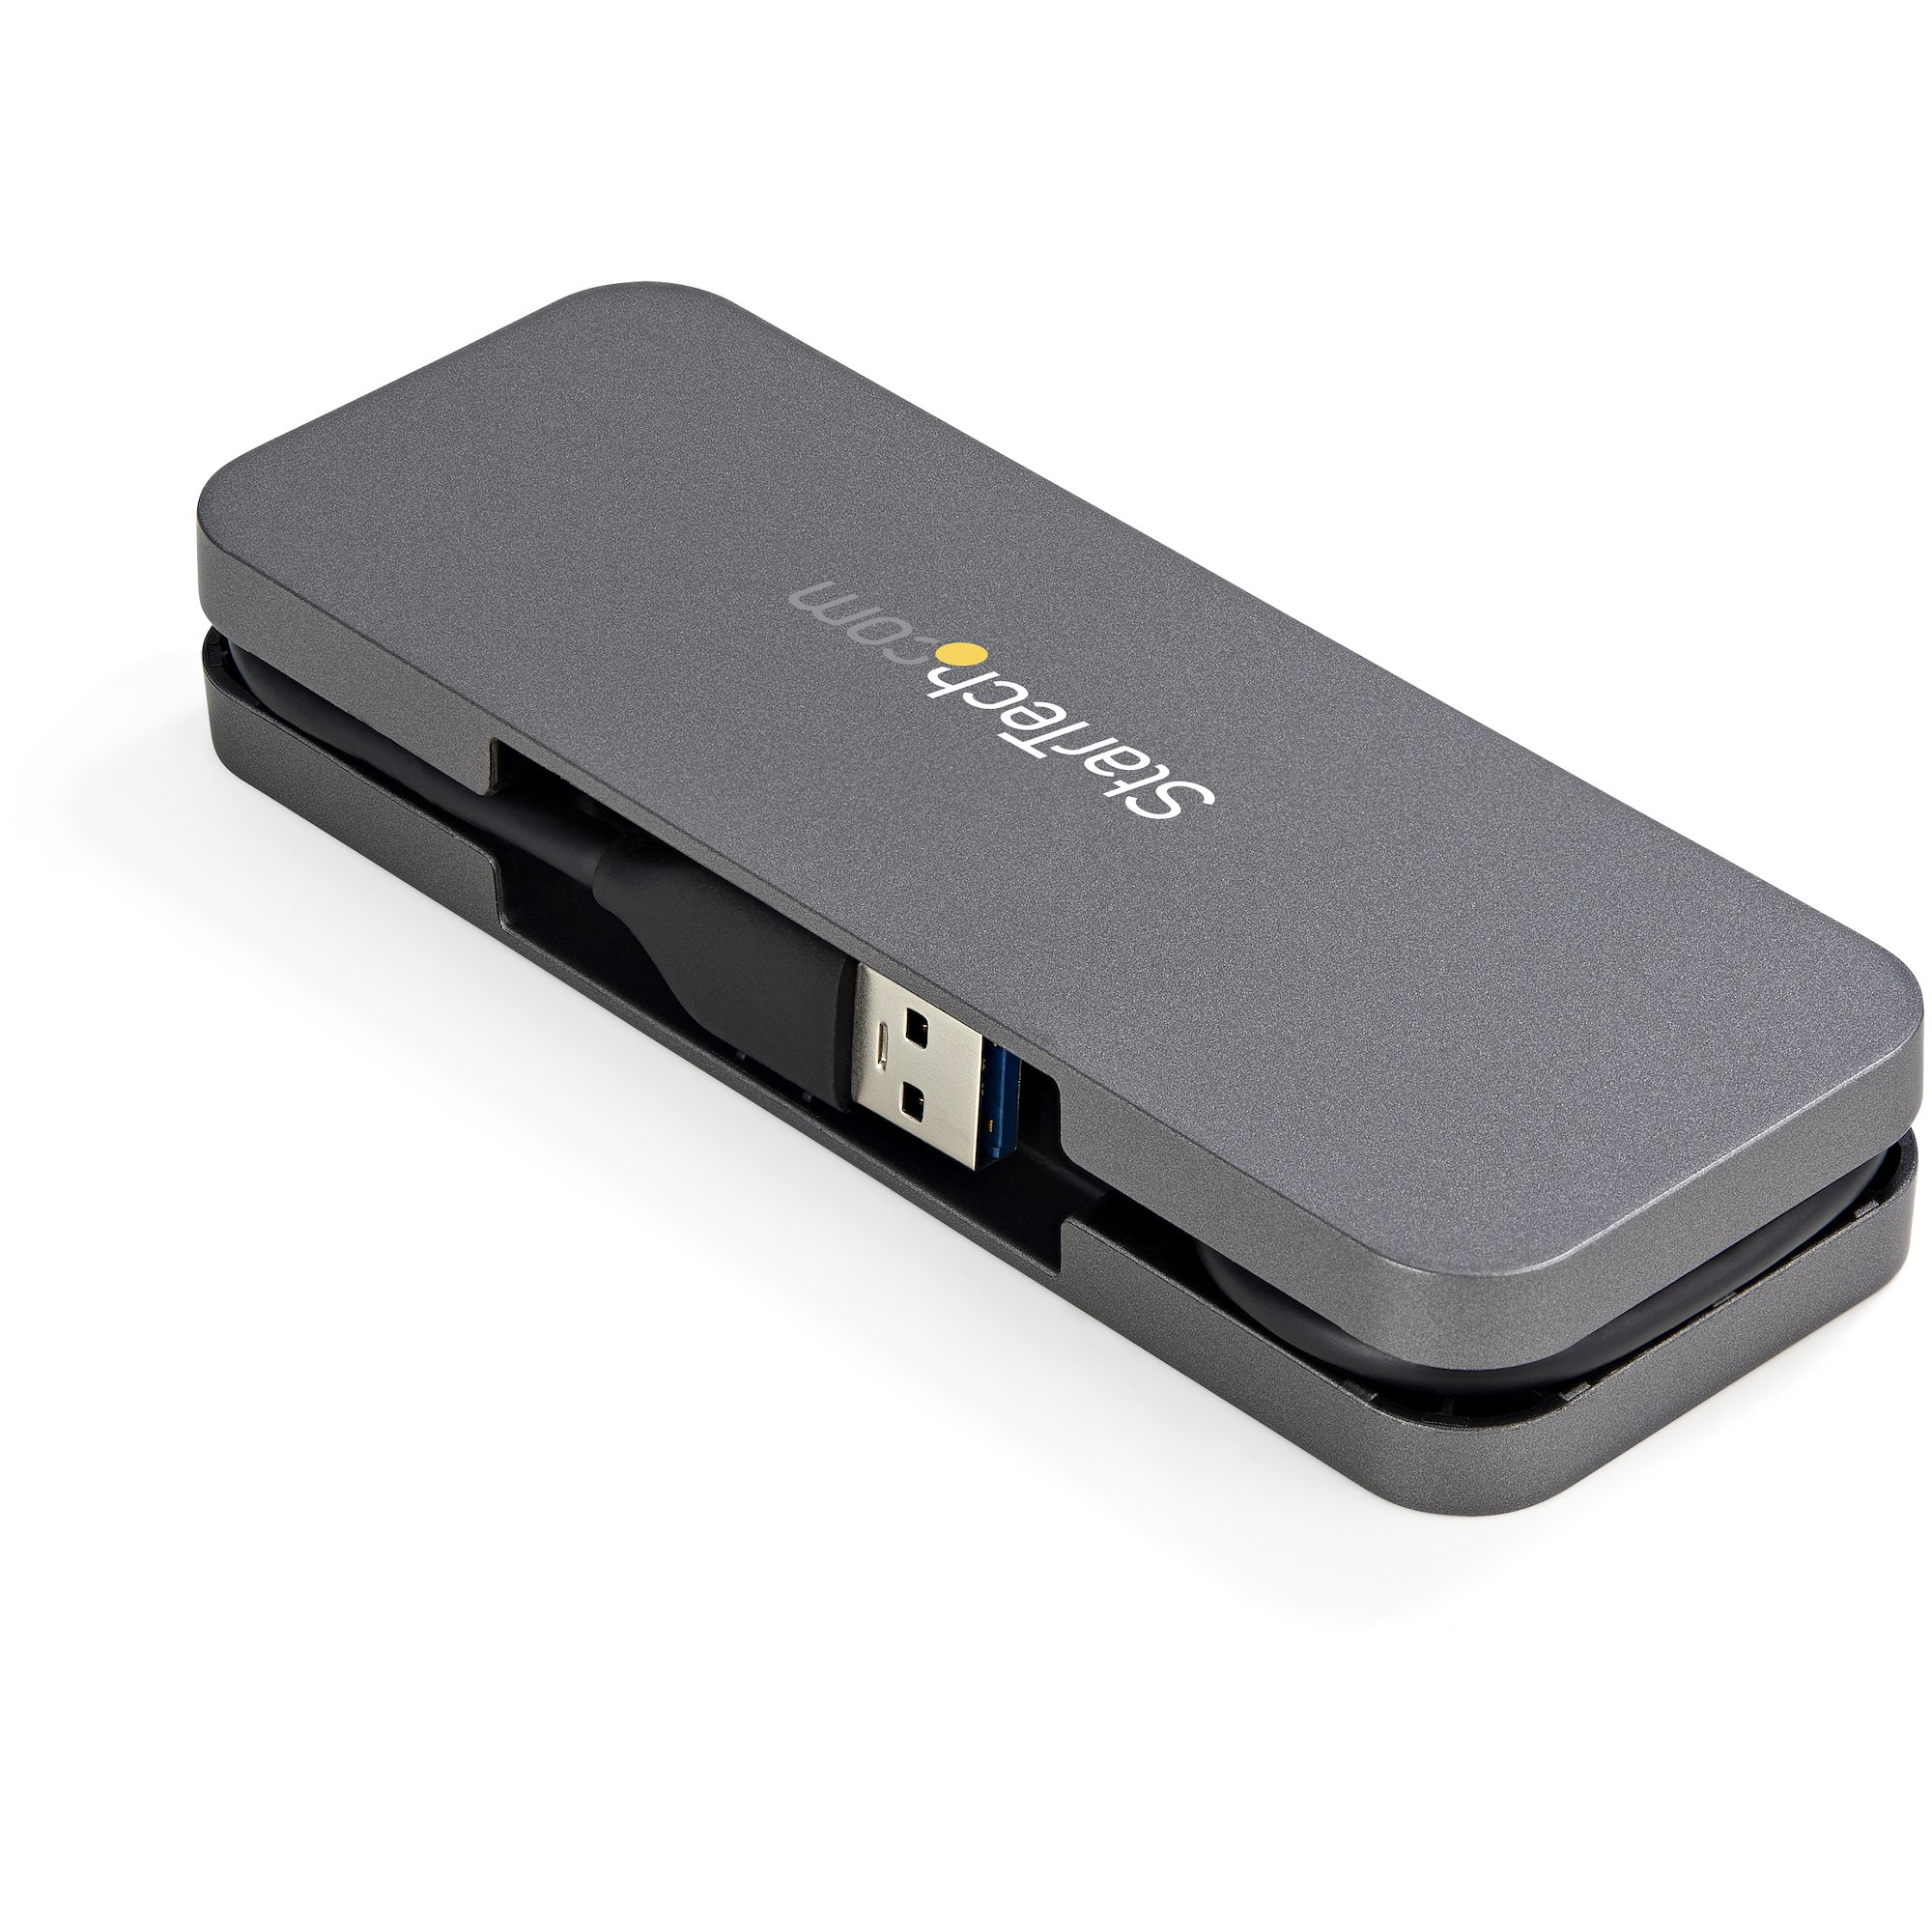 ᐅ Hub USB 3.0 de 4 Puertos 5Gbps 4A de Startech.com cables